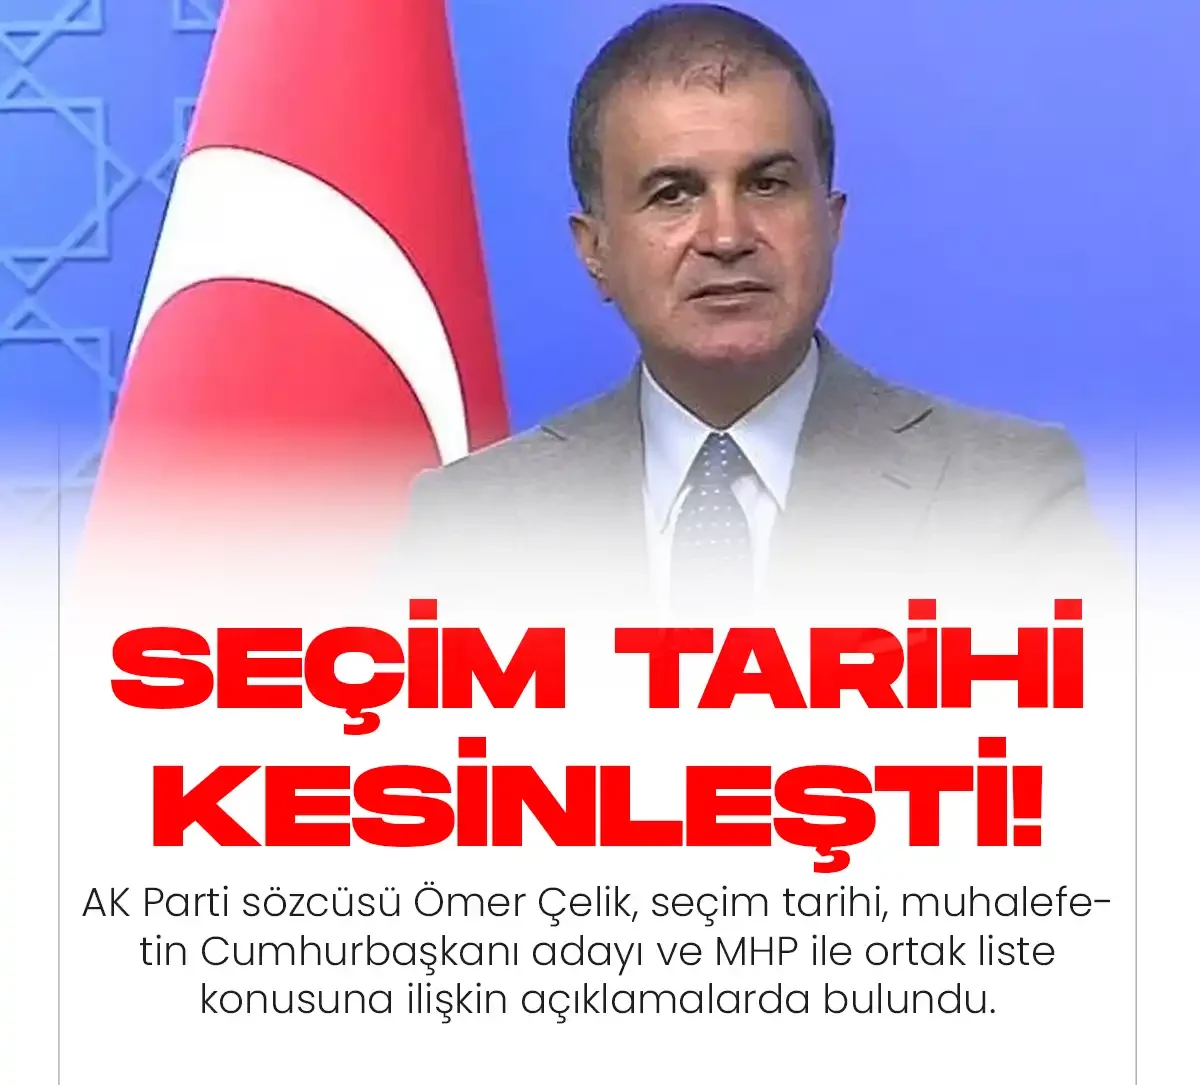 AK Parti sözcüsünden seçim tarihi açıklaması geldi.